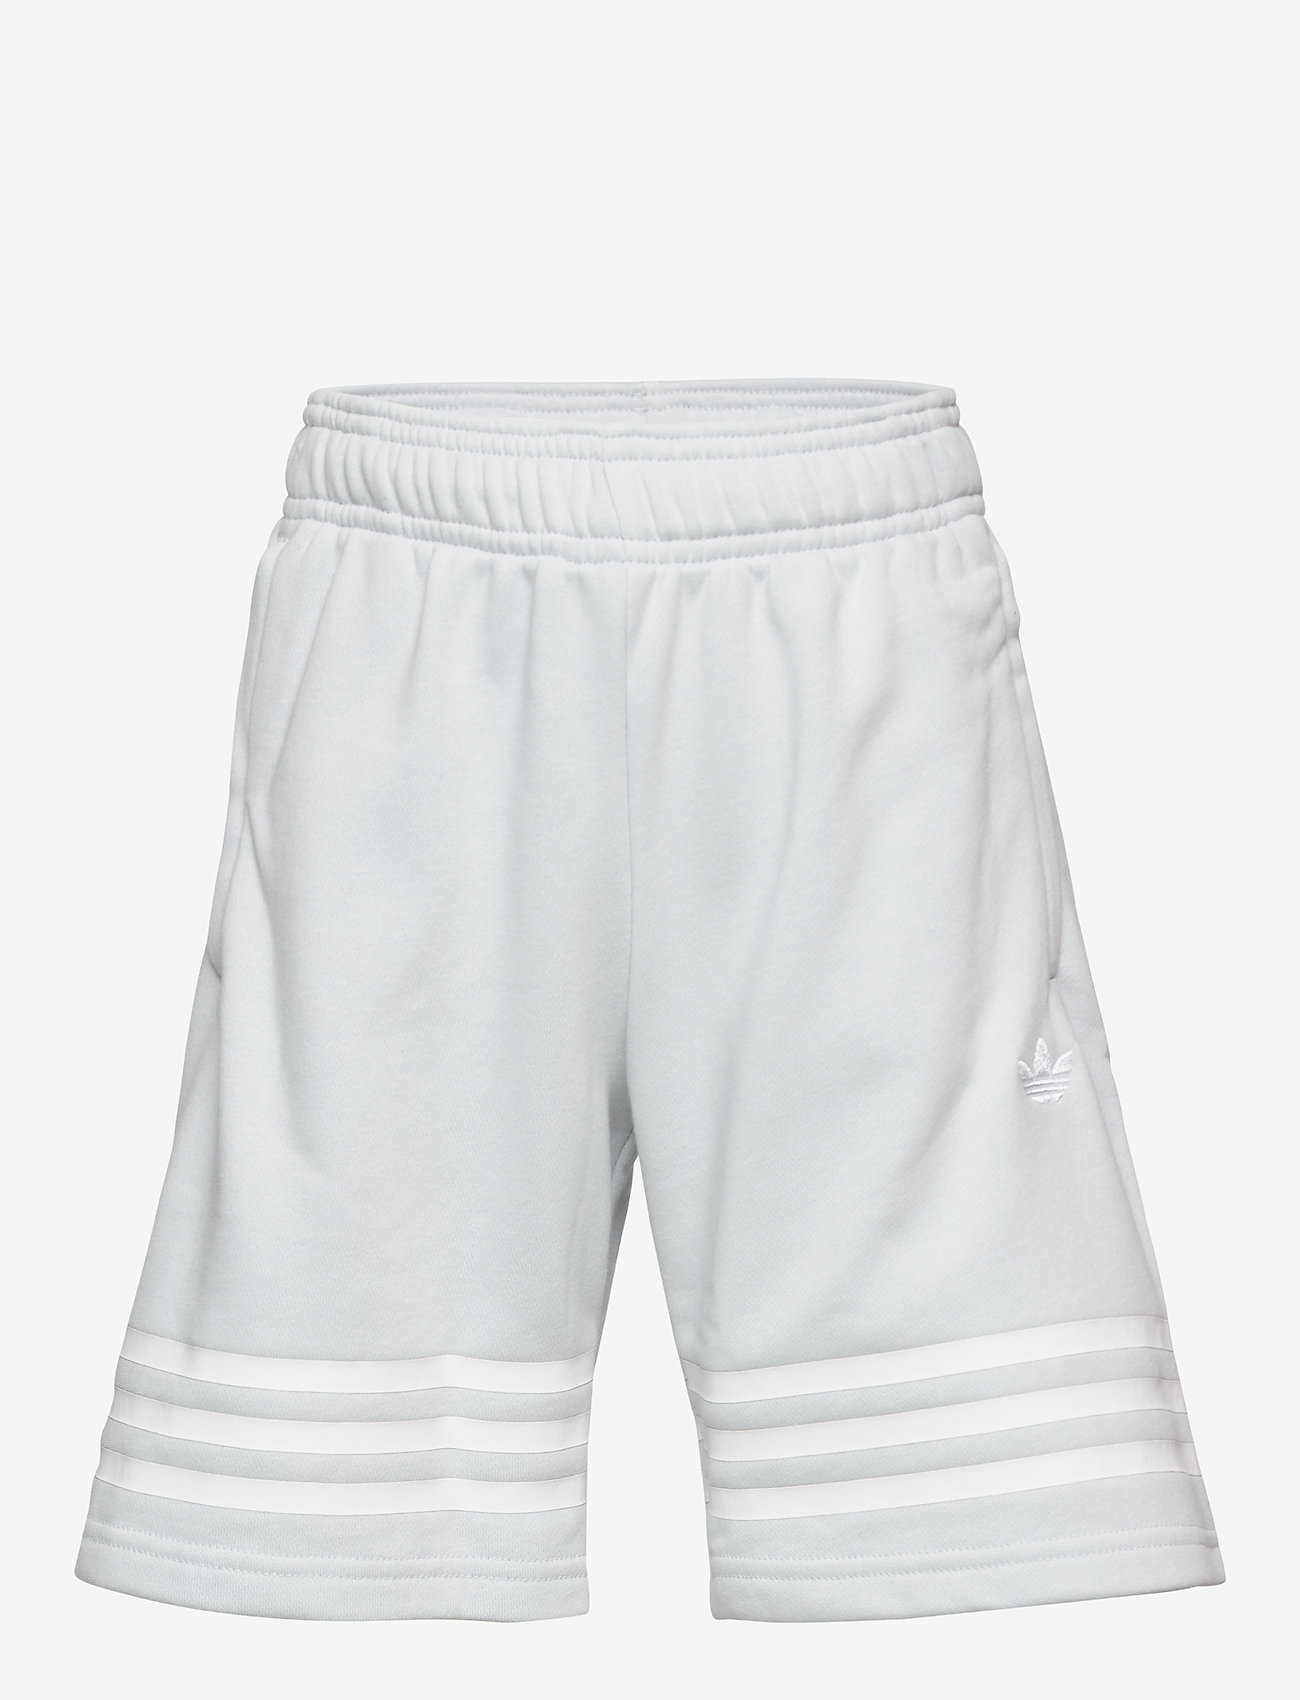 adidas originals outline shorts